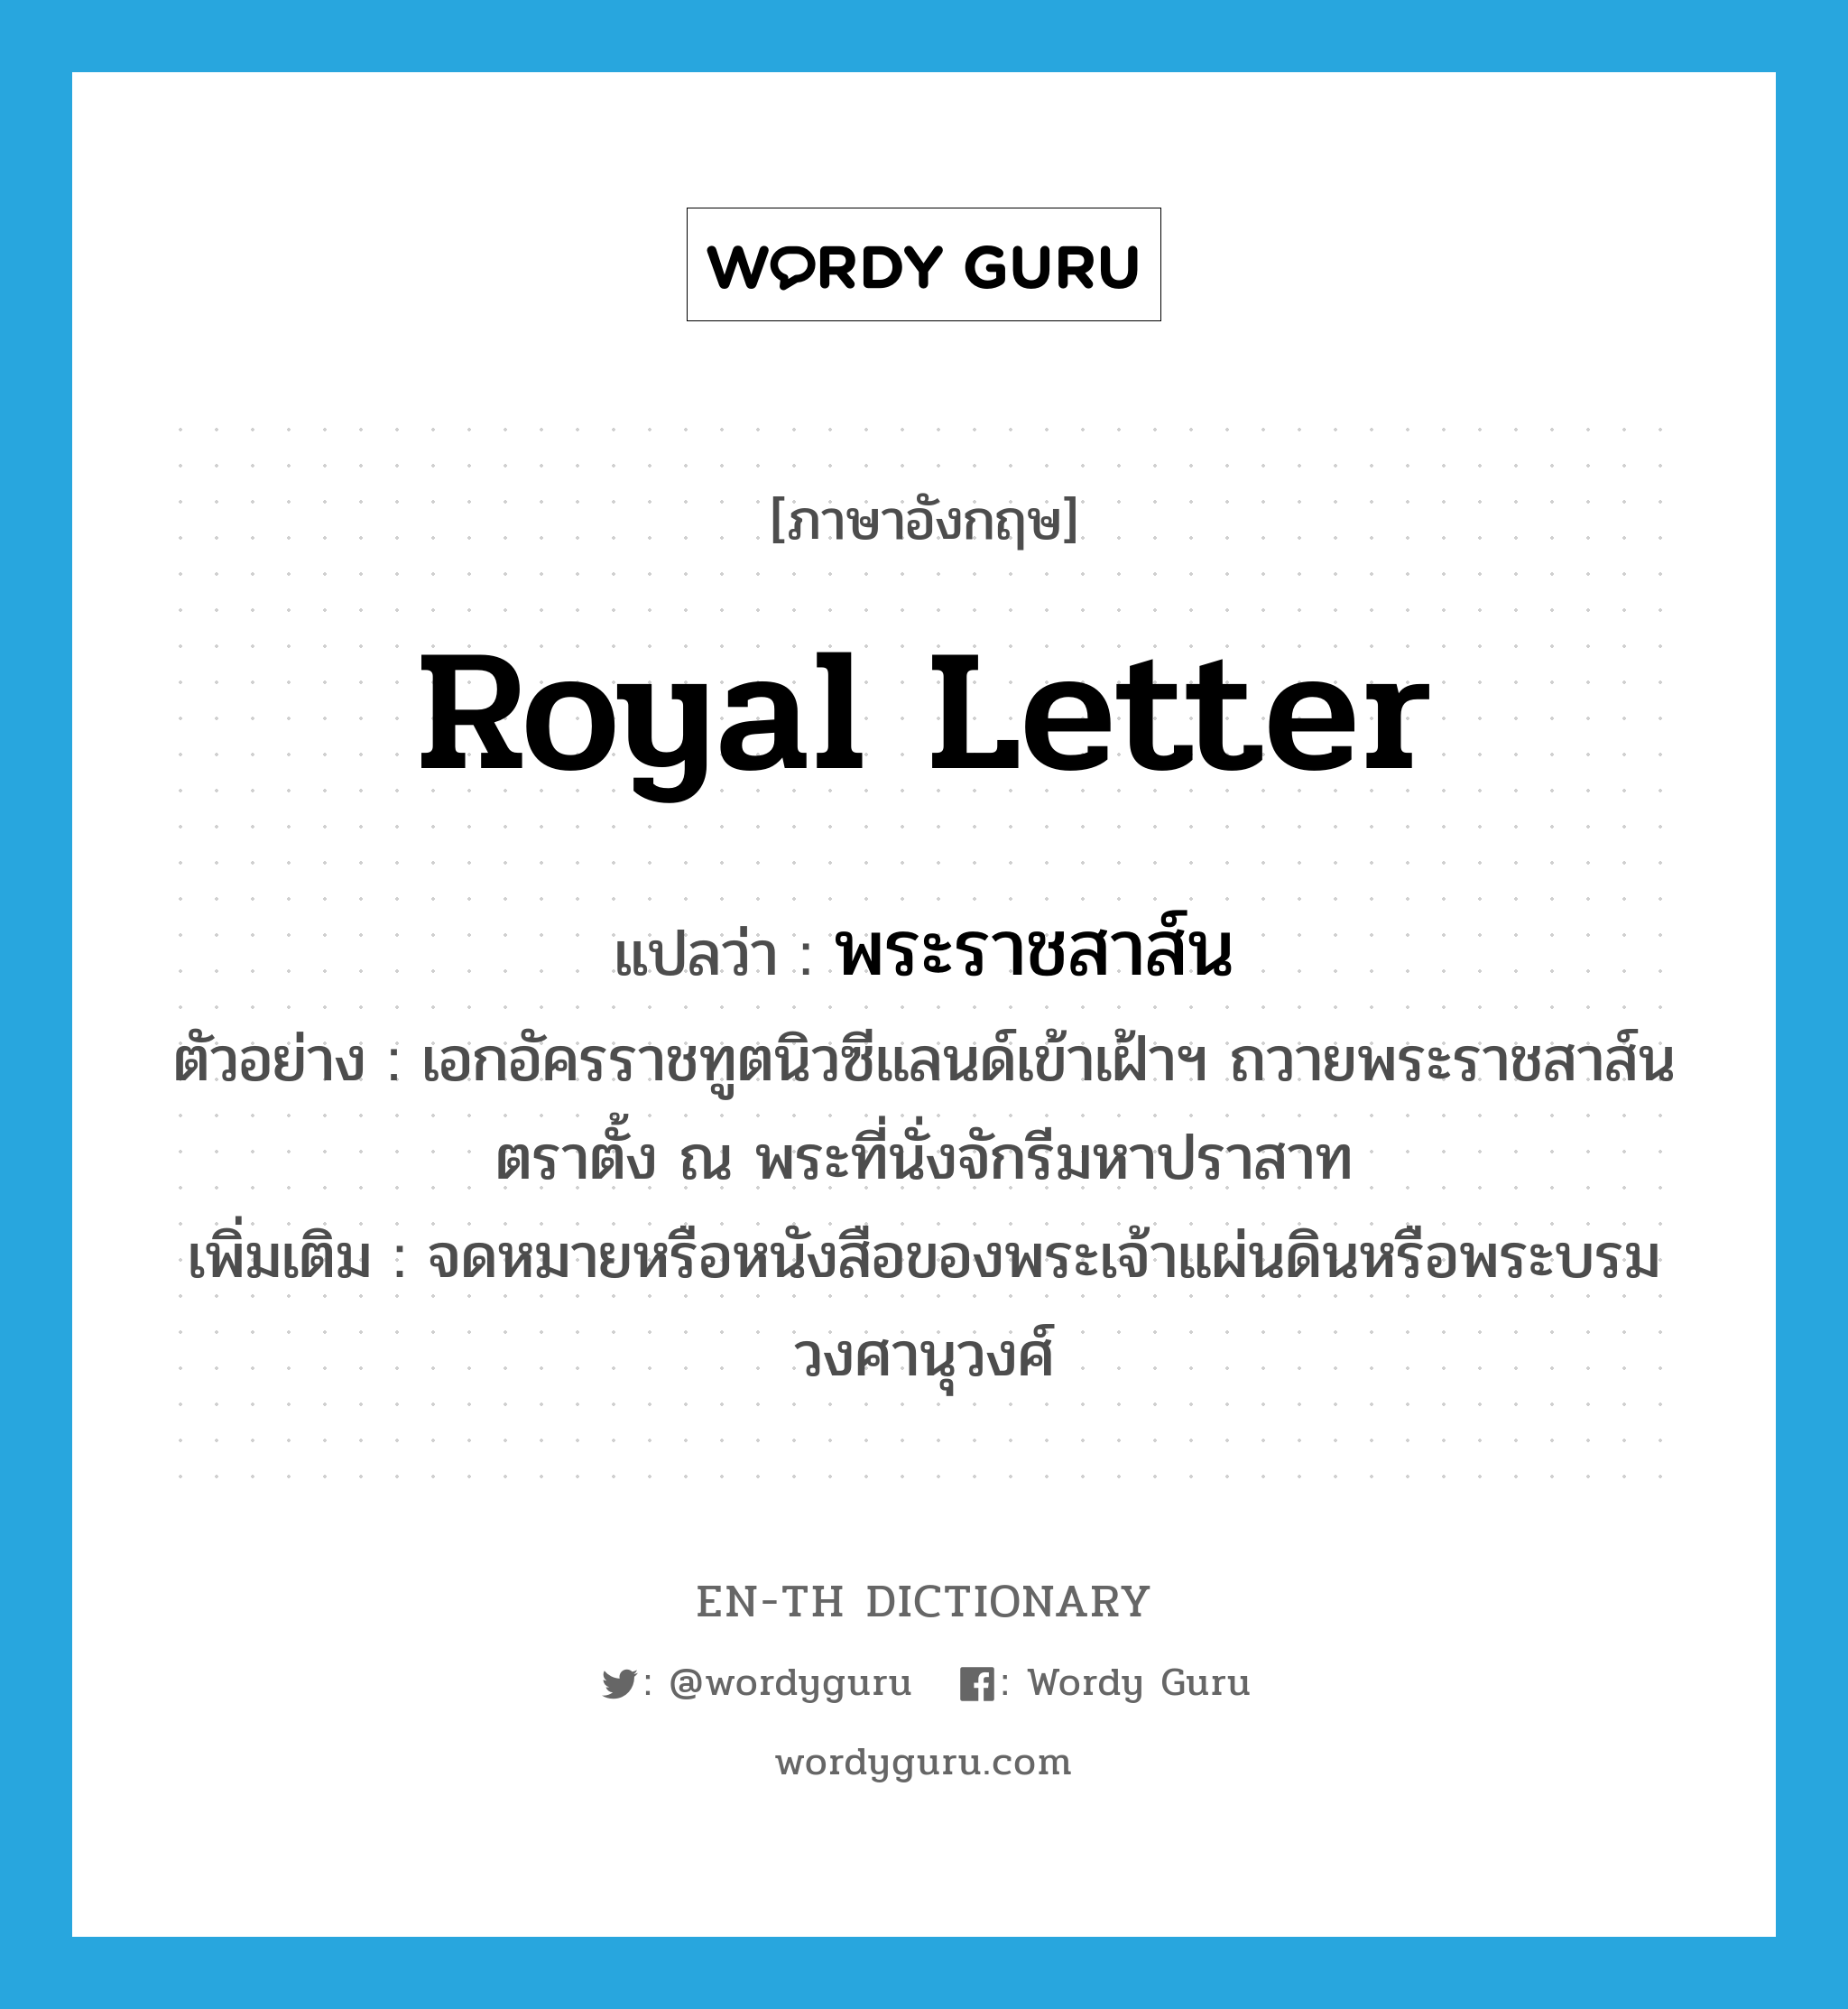 royal letter แปลว่า?, คำศัพท์ภาษาอังกฤษ royal letter แปลว่า พระราชสาส์น ประเภท N ตัวอย่าง เอกอัครราชทูตนิวซีแลนด์เข้าเฝ้าฯ ถวายพระราชสาส์นตราตั้ง ณ พระที่นั่งจักรีมหาปราสาท เพิ่มเติม จดหมายหรือหนังสือของพระเจ้าแผ่นดินหรือพระบรมวงศานุวงศ์ หมวด N